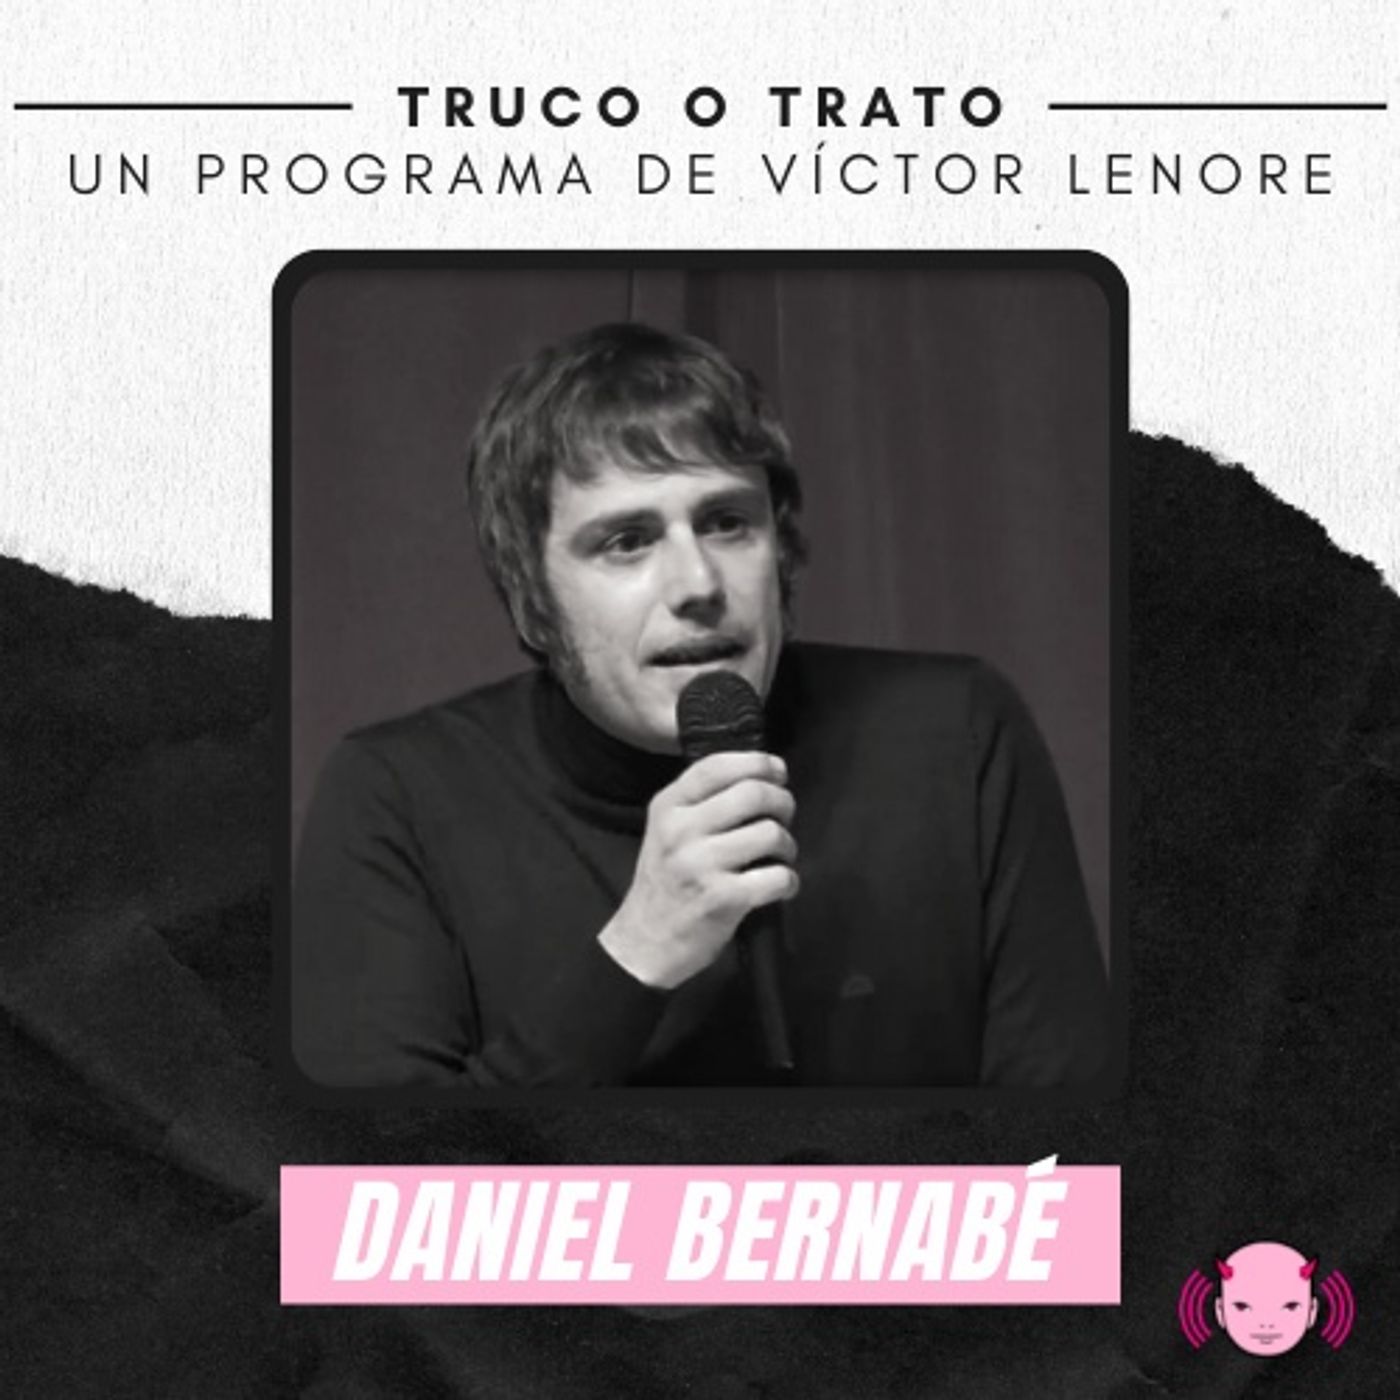 Truco o trato con Victor Lenore #14: Daniel Bernabé